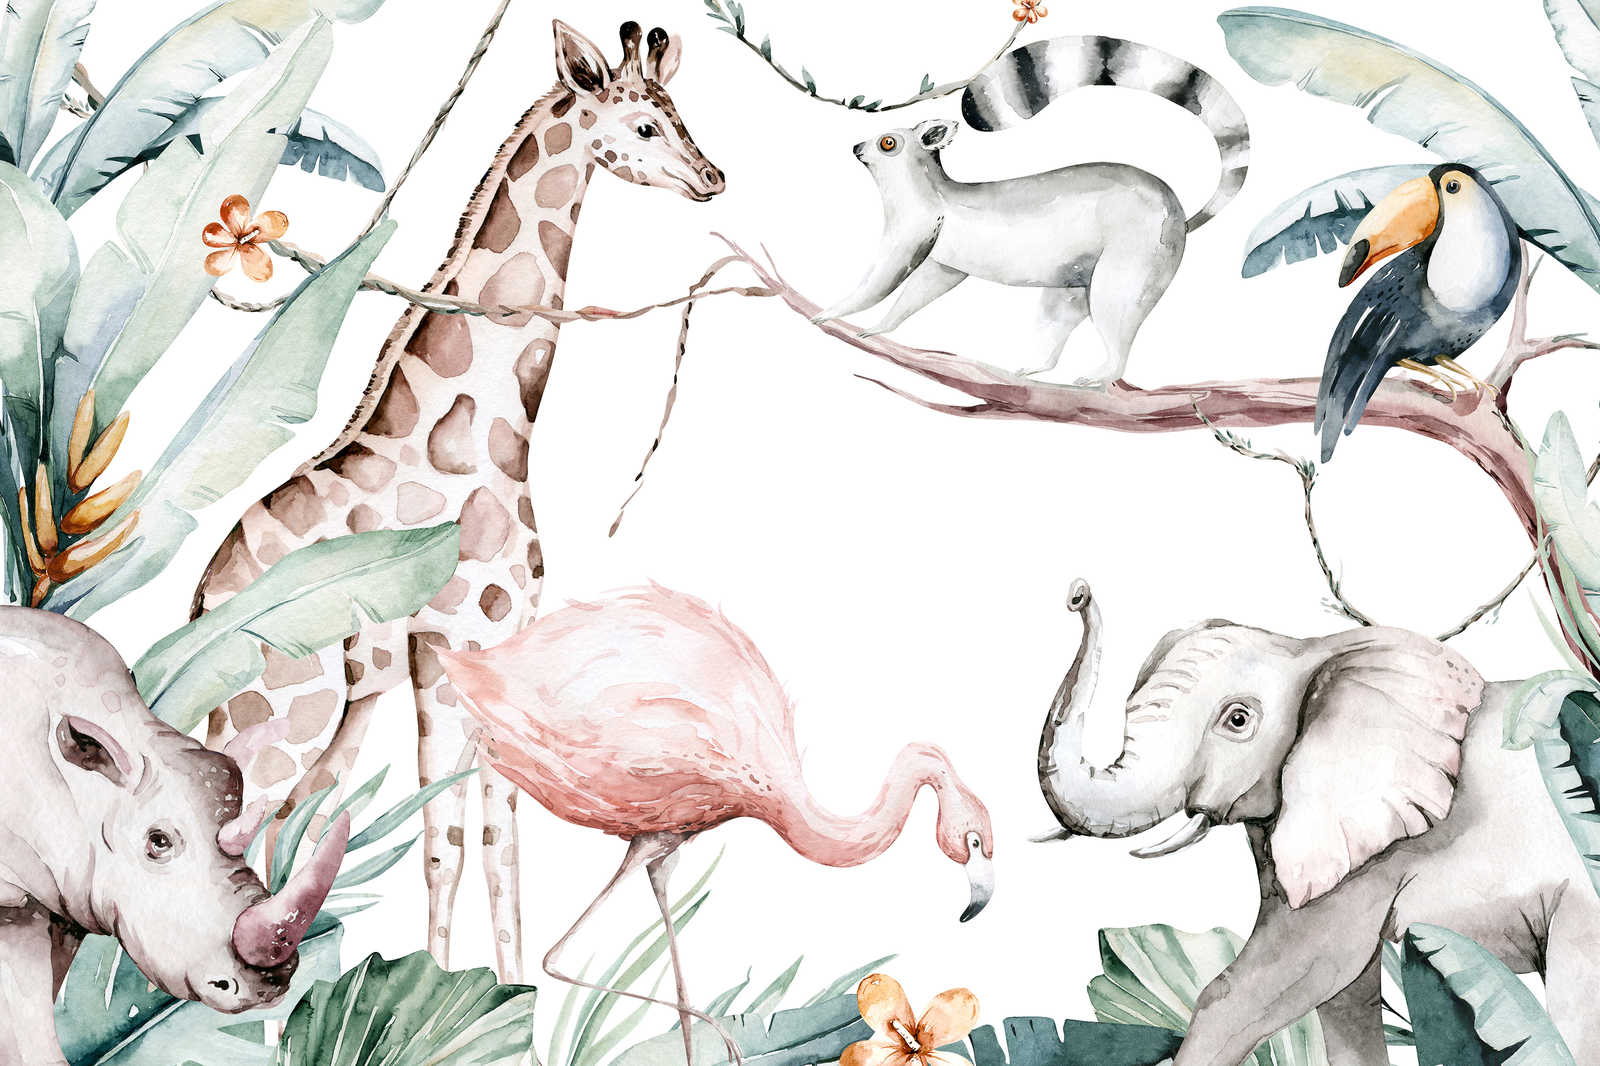             Canvas schilderij met dieren uit de jungle voor kinderen - 0,90 m x 0,60 m
        